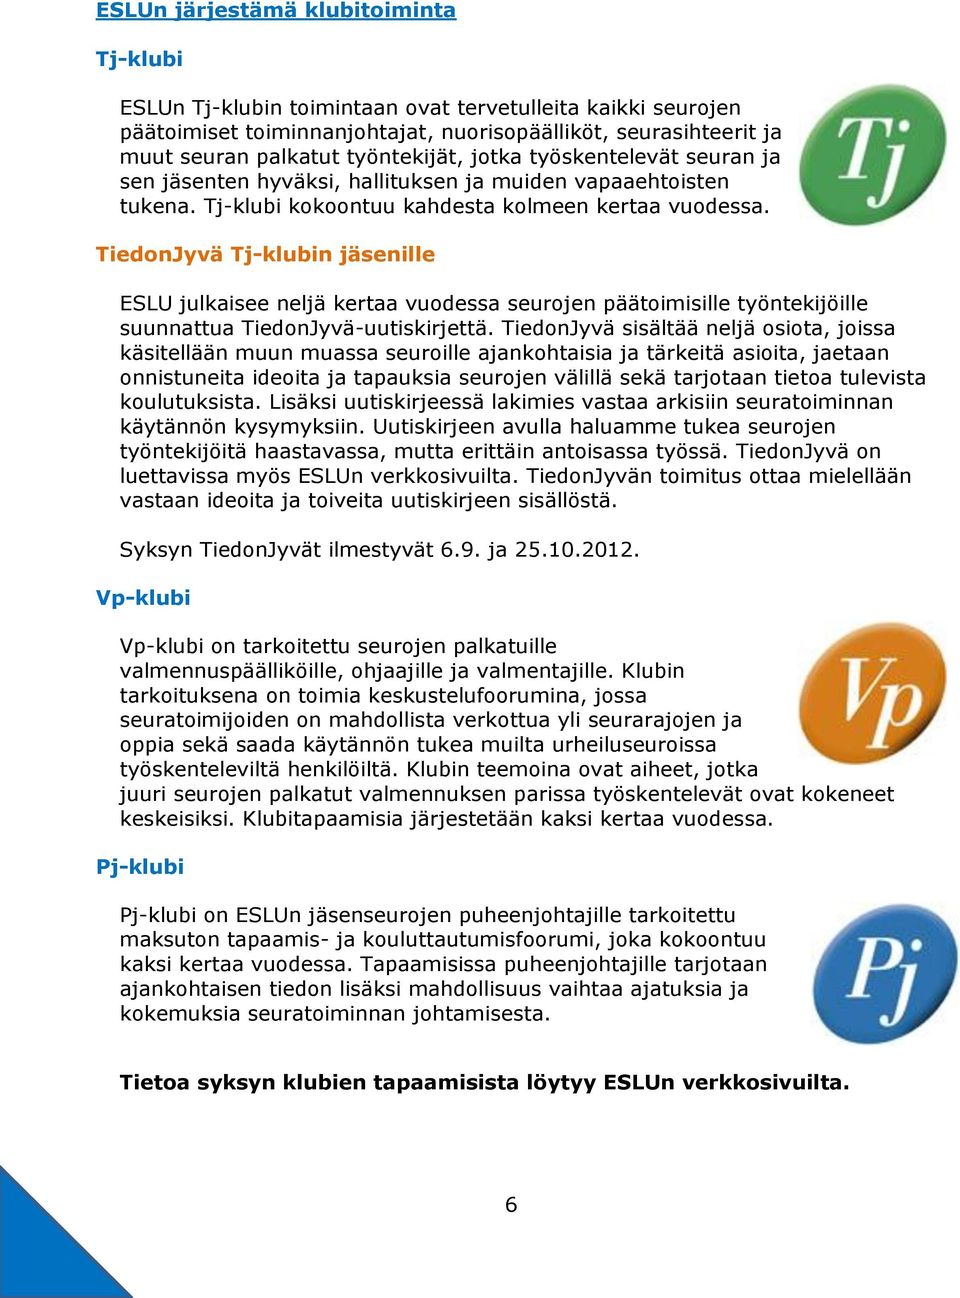 TiedonJyvä Tj-klubin jäsenille ESLU julkaisee neljä kertaa vuodessa seurojen päätoimisille työntekijöille suunnattua TiedonJyvä-uutiskirjettä.